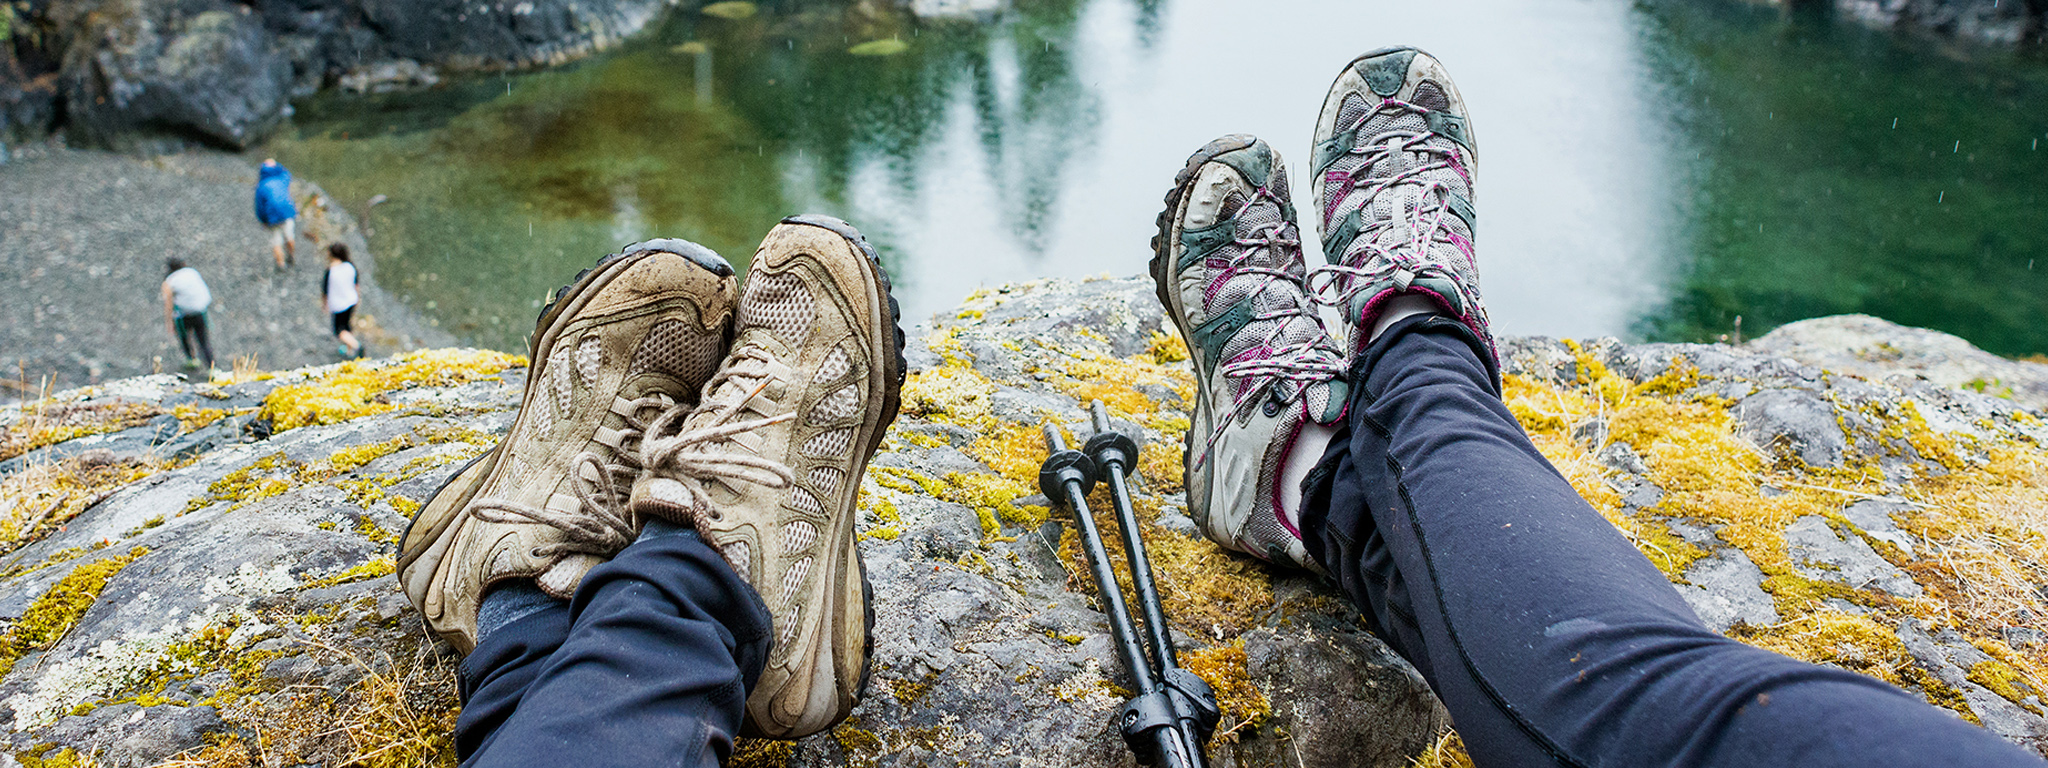 Ноги двух человек свисают с края скалы, открывая вид на озеро.